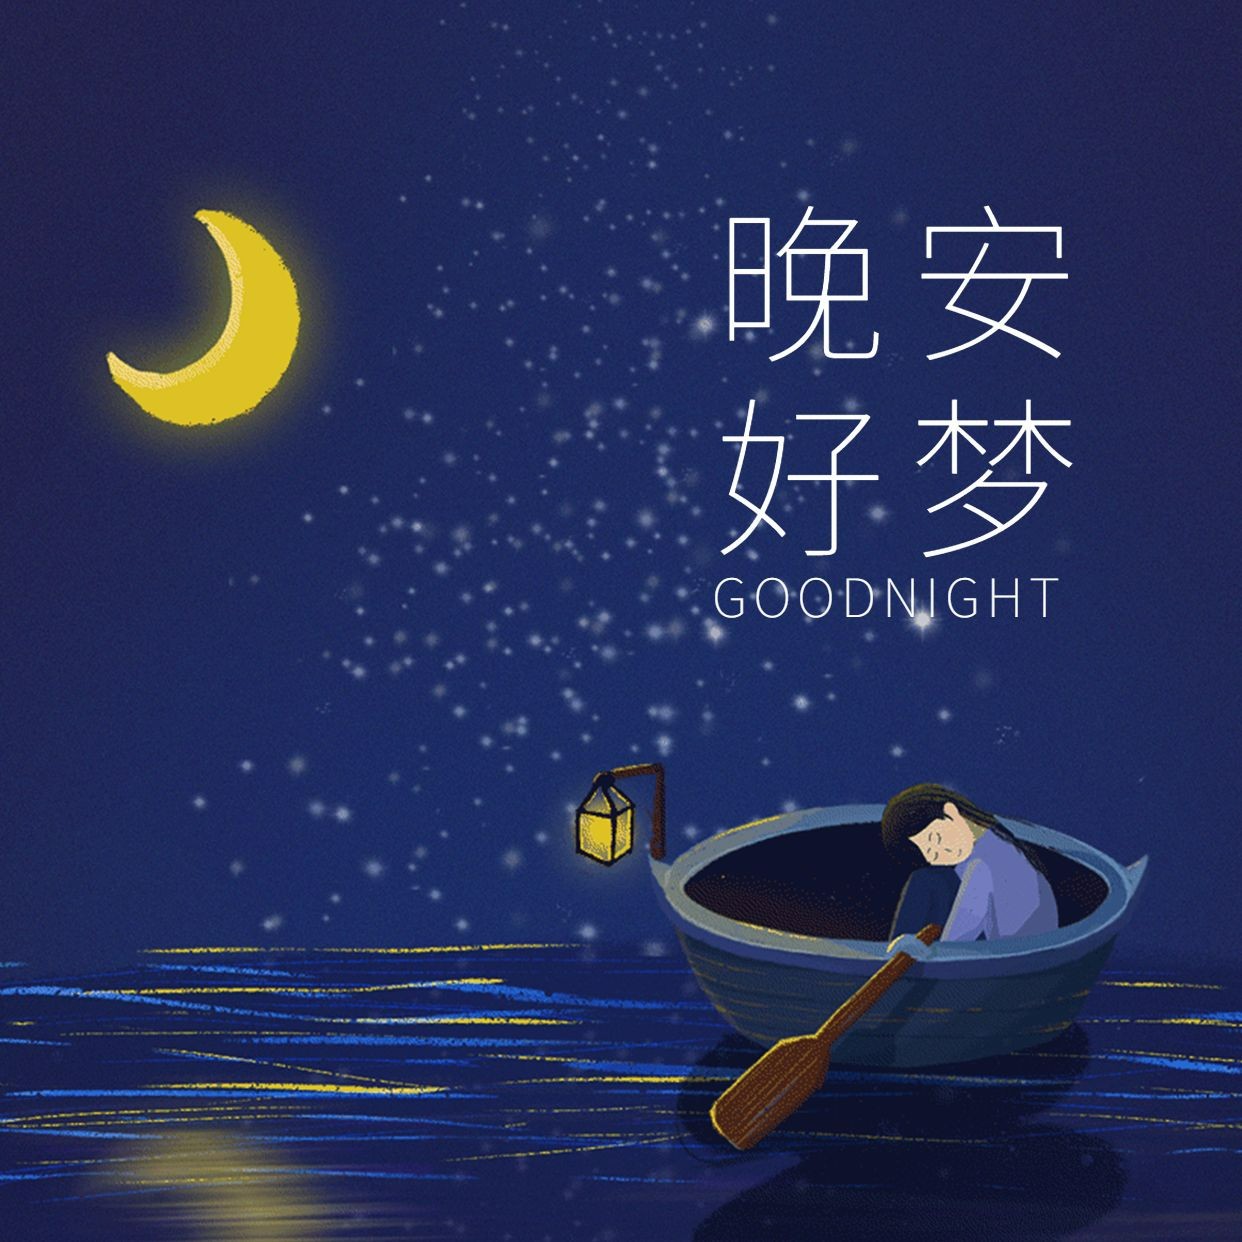 晚安超美静谧夜空唯美壁纸图片 - 来配图